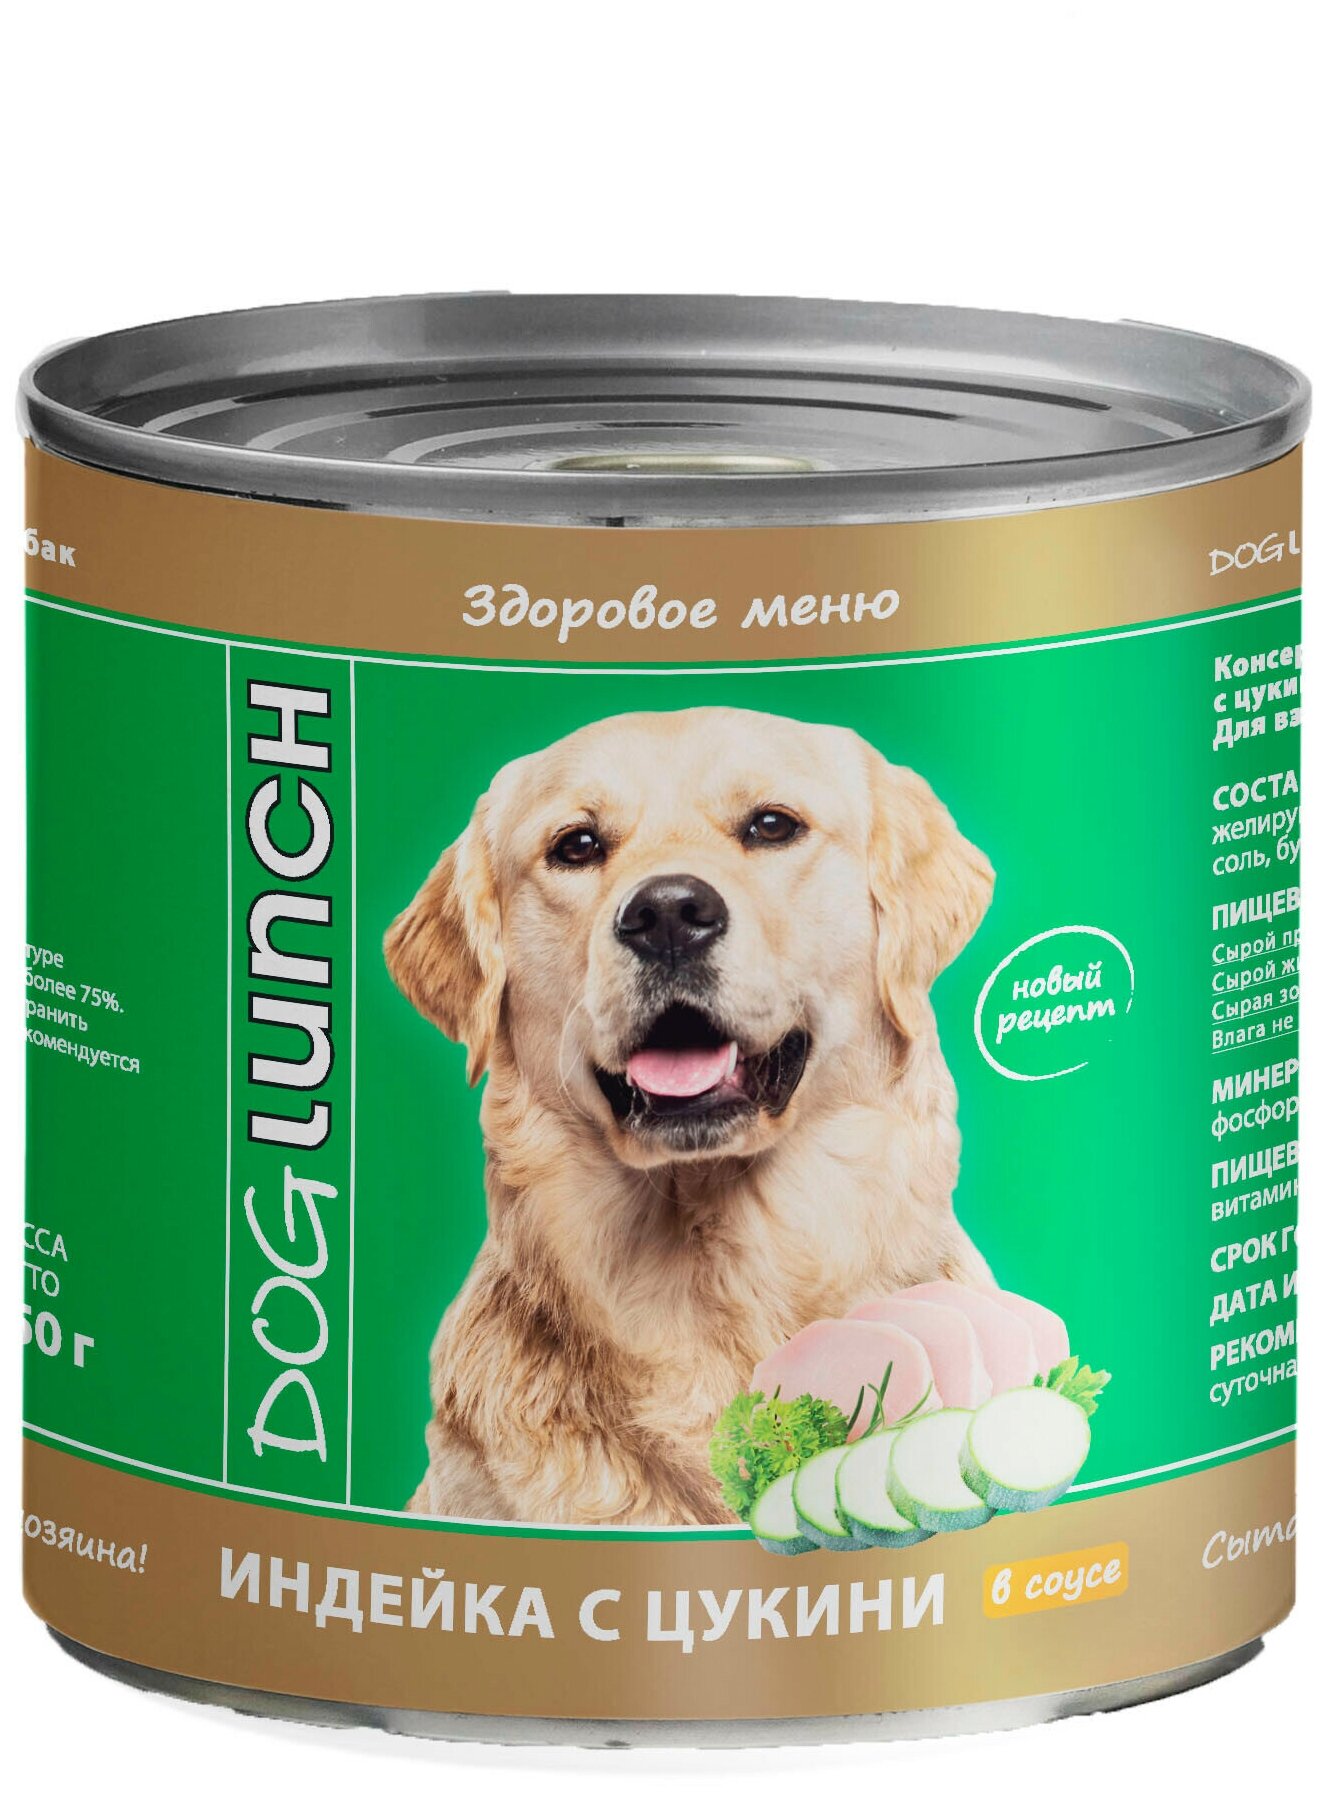 DogLunch консервы для собак Индейка с цукини в соусе 750г